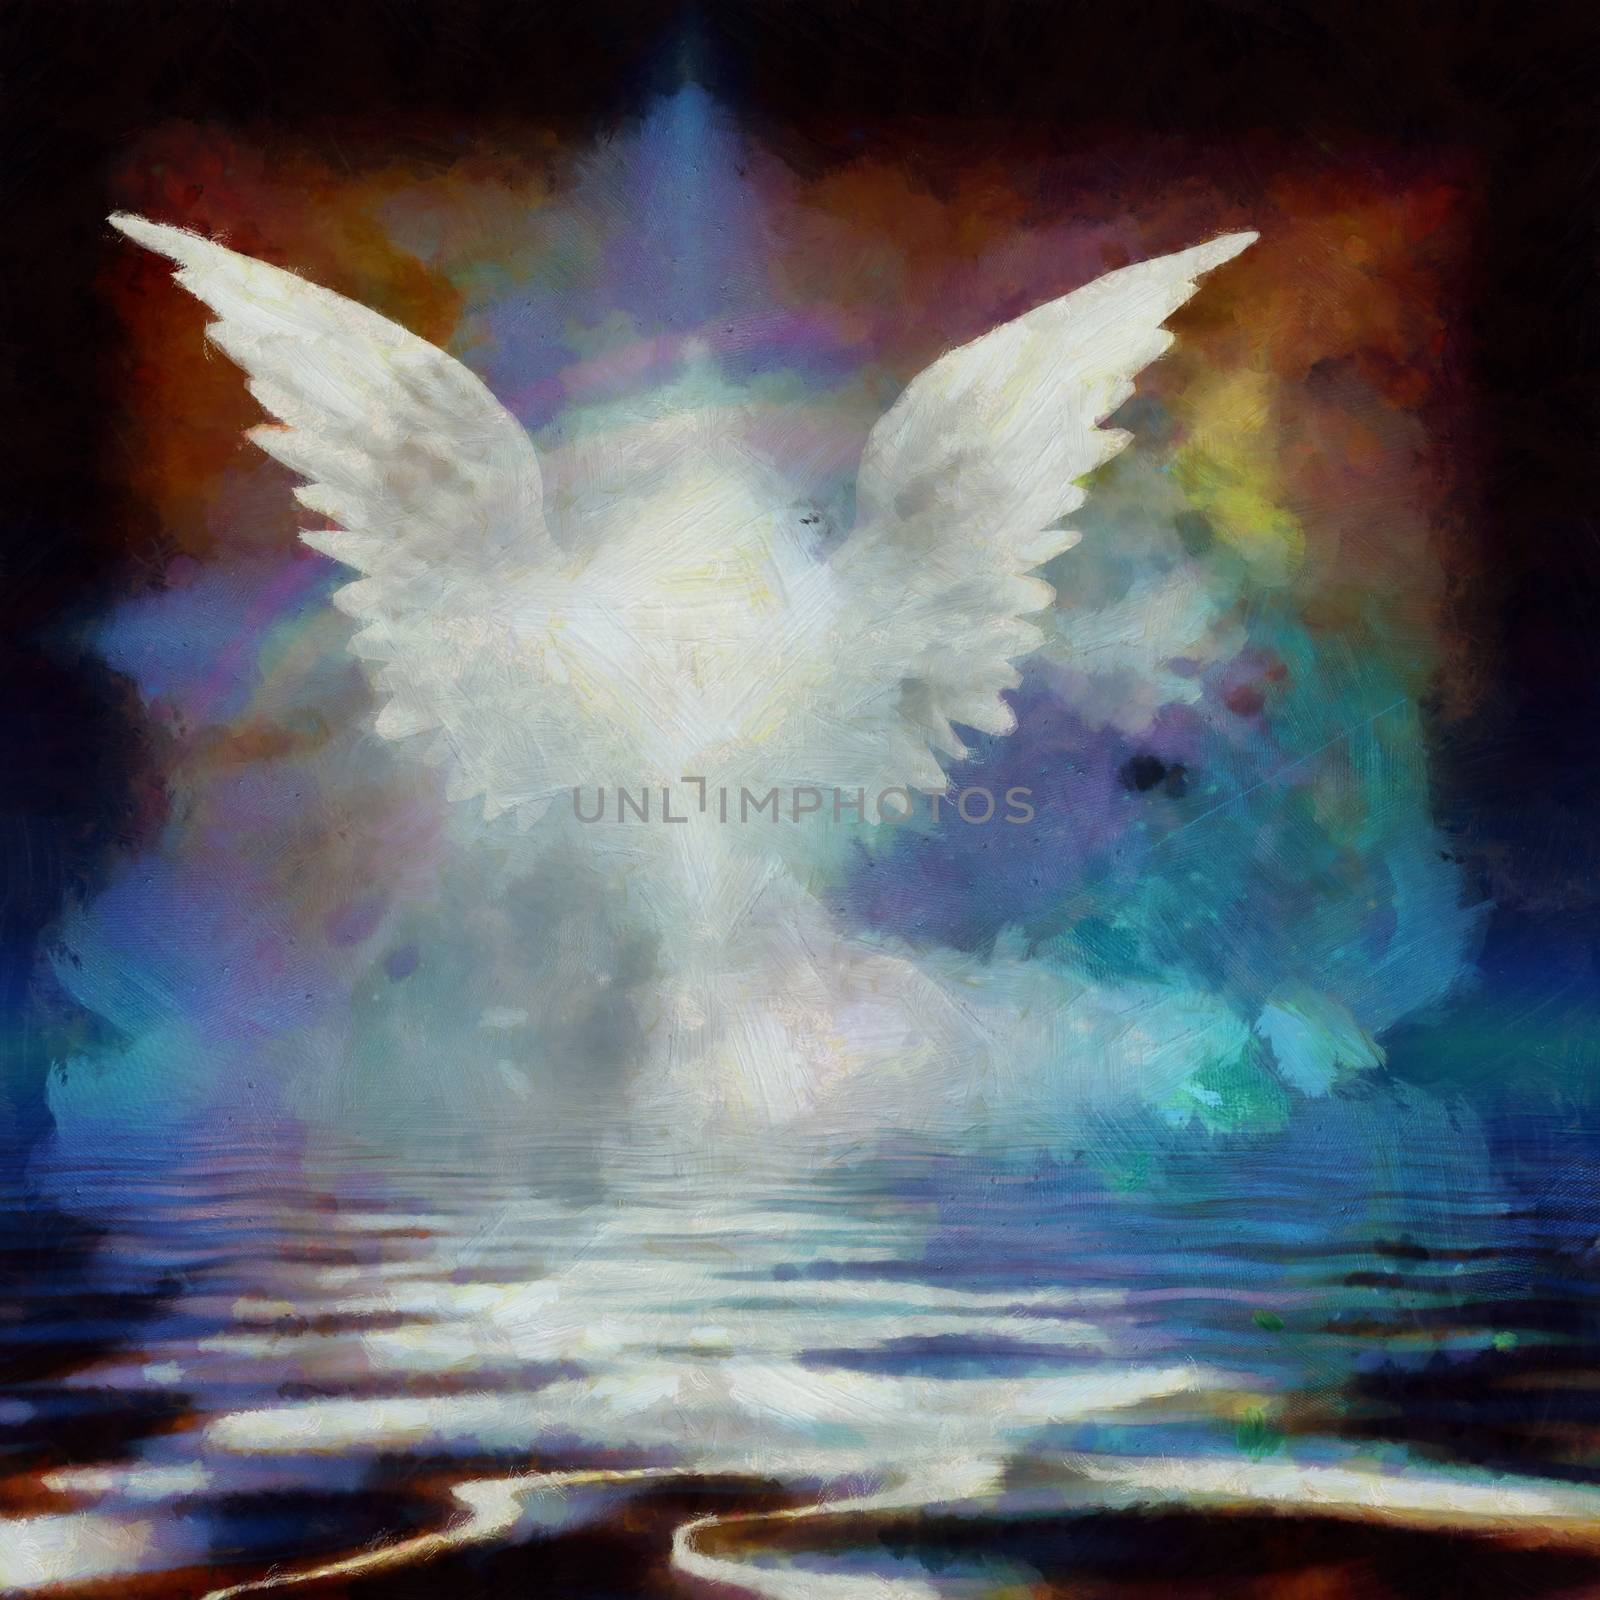 Wings over water. Digital painting. 3D rendering